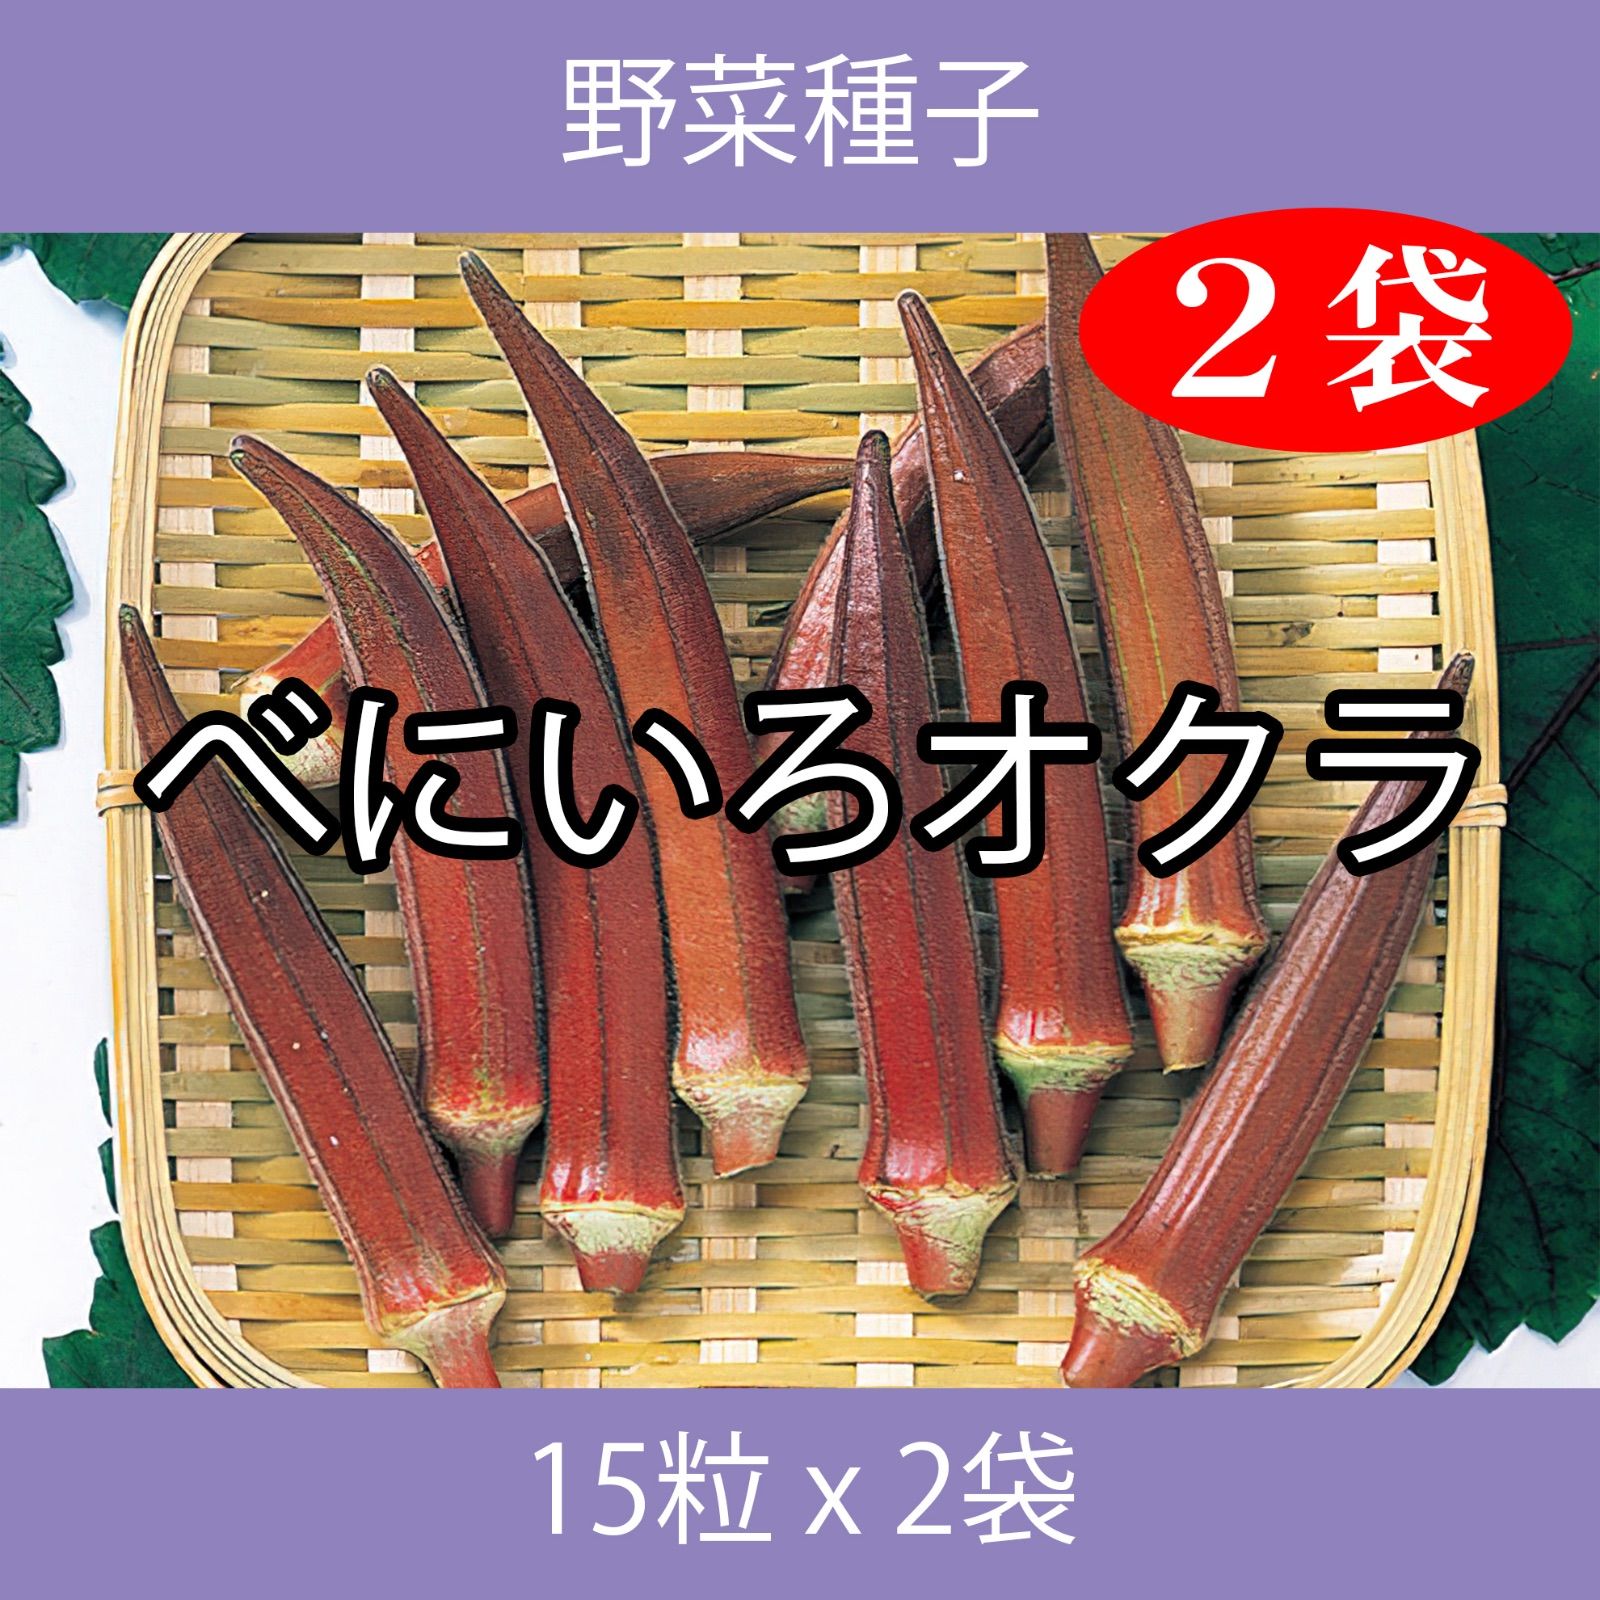 日本正規代理店品 ベビーリーフ種子 B-41 レッドスピナッチ 2.5ml 約60